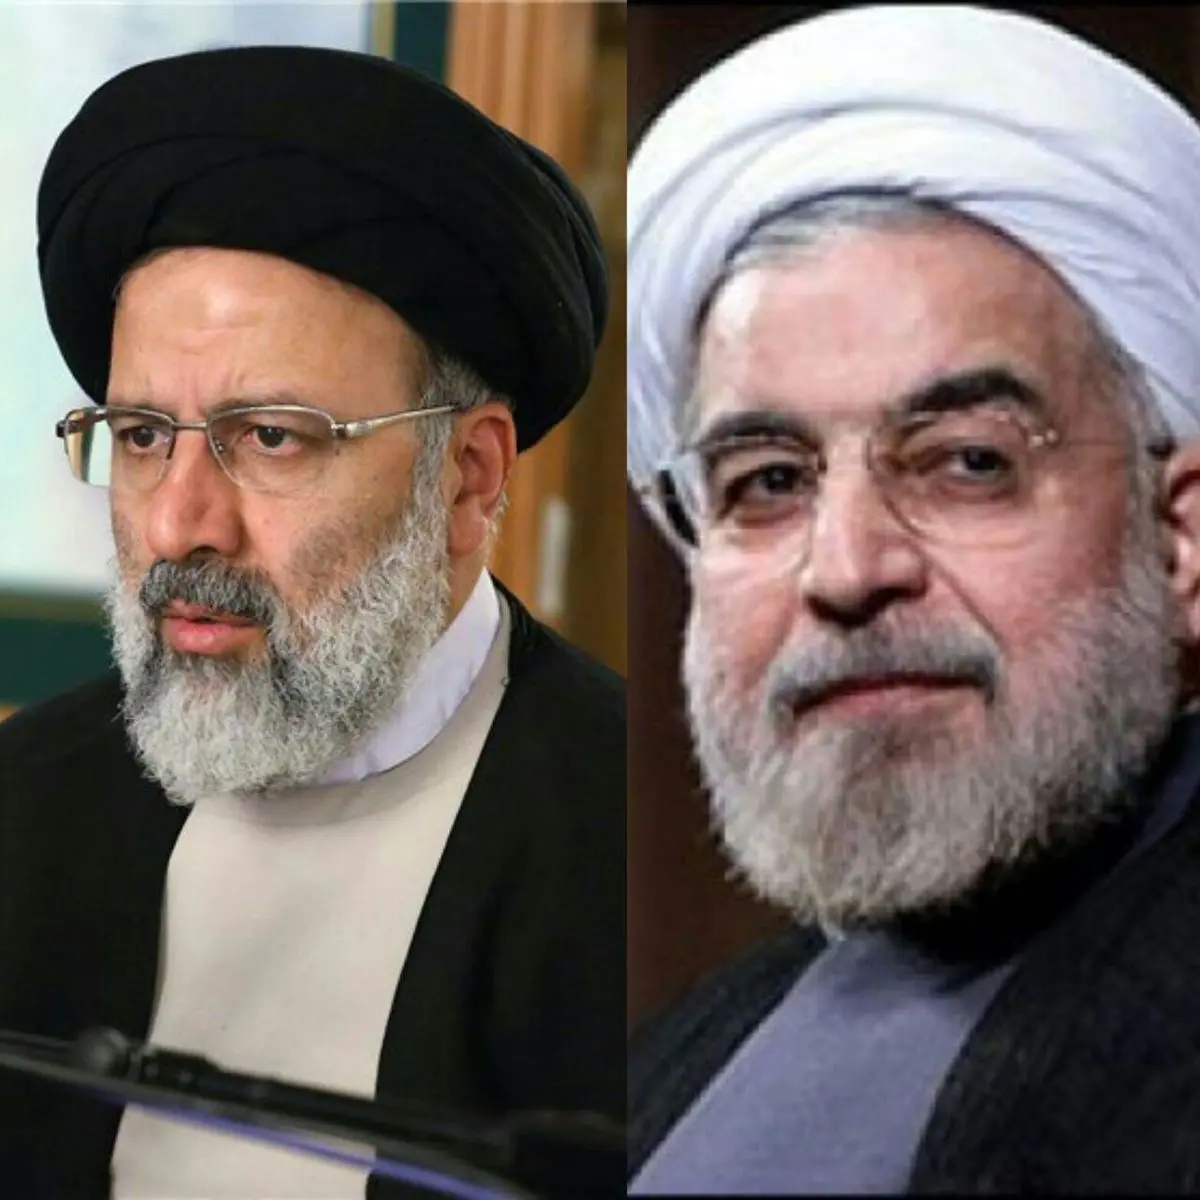 مقایسه آراء روحانی با رئیسی/ روحانی با 1440 روز تبلیغات، رئیسی با 40 روز تبلیغات